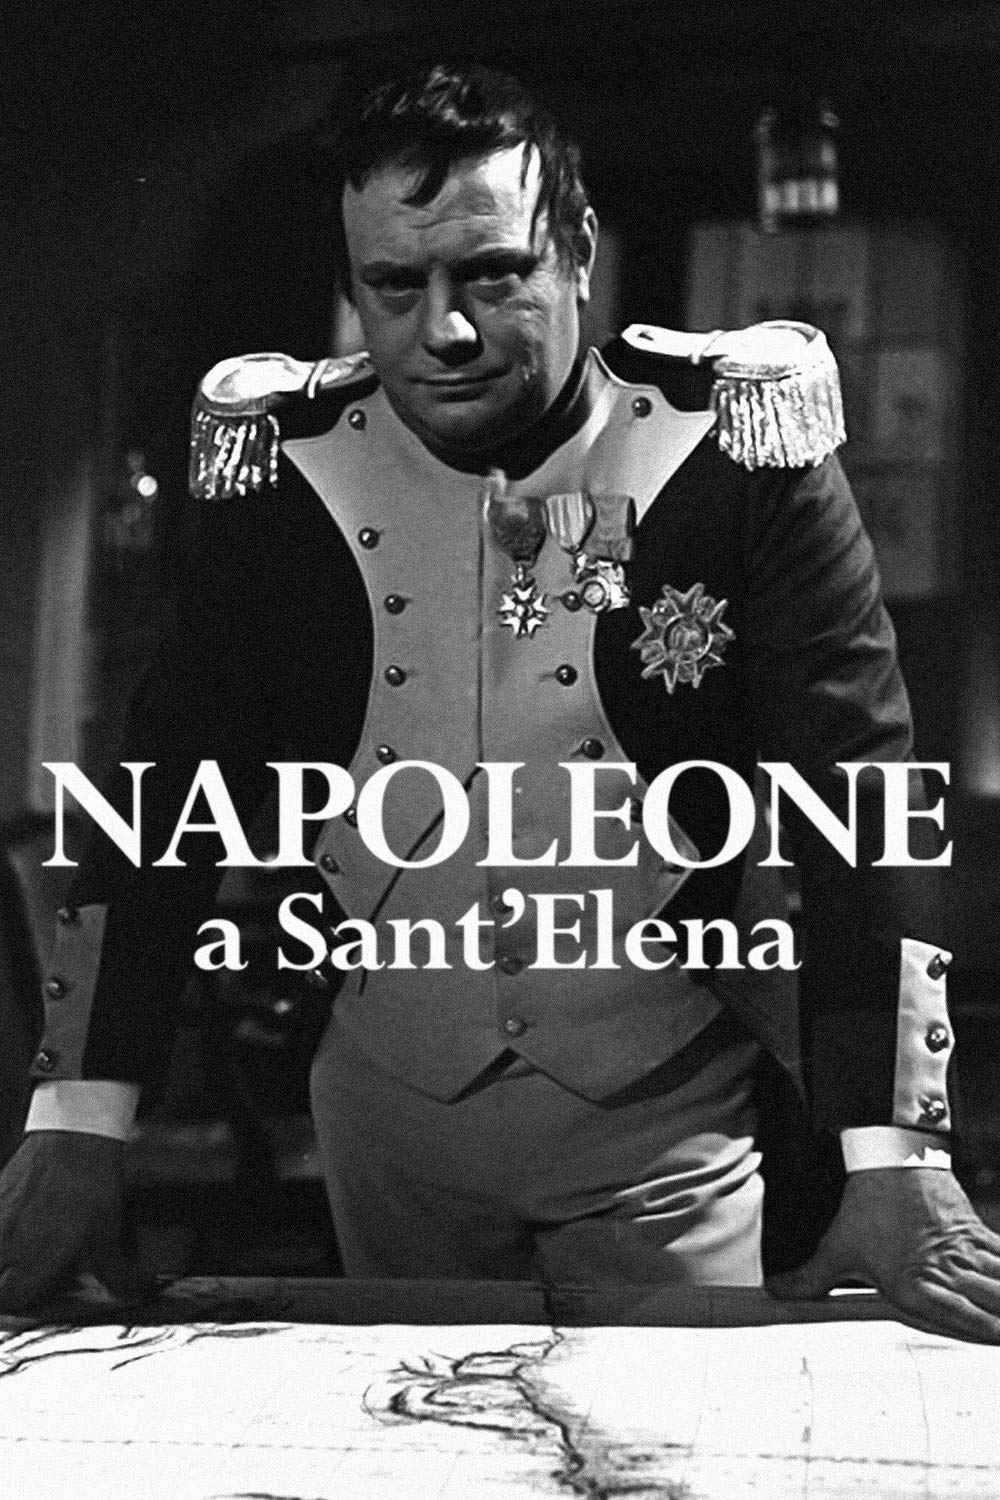 Napoleone a Sant’Elena